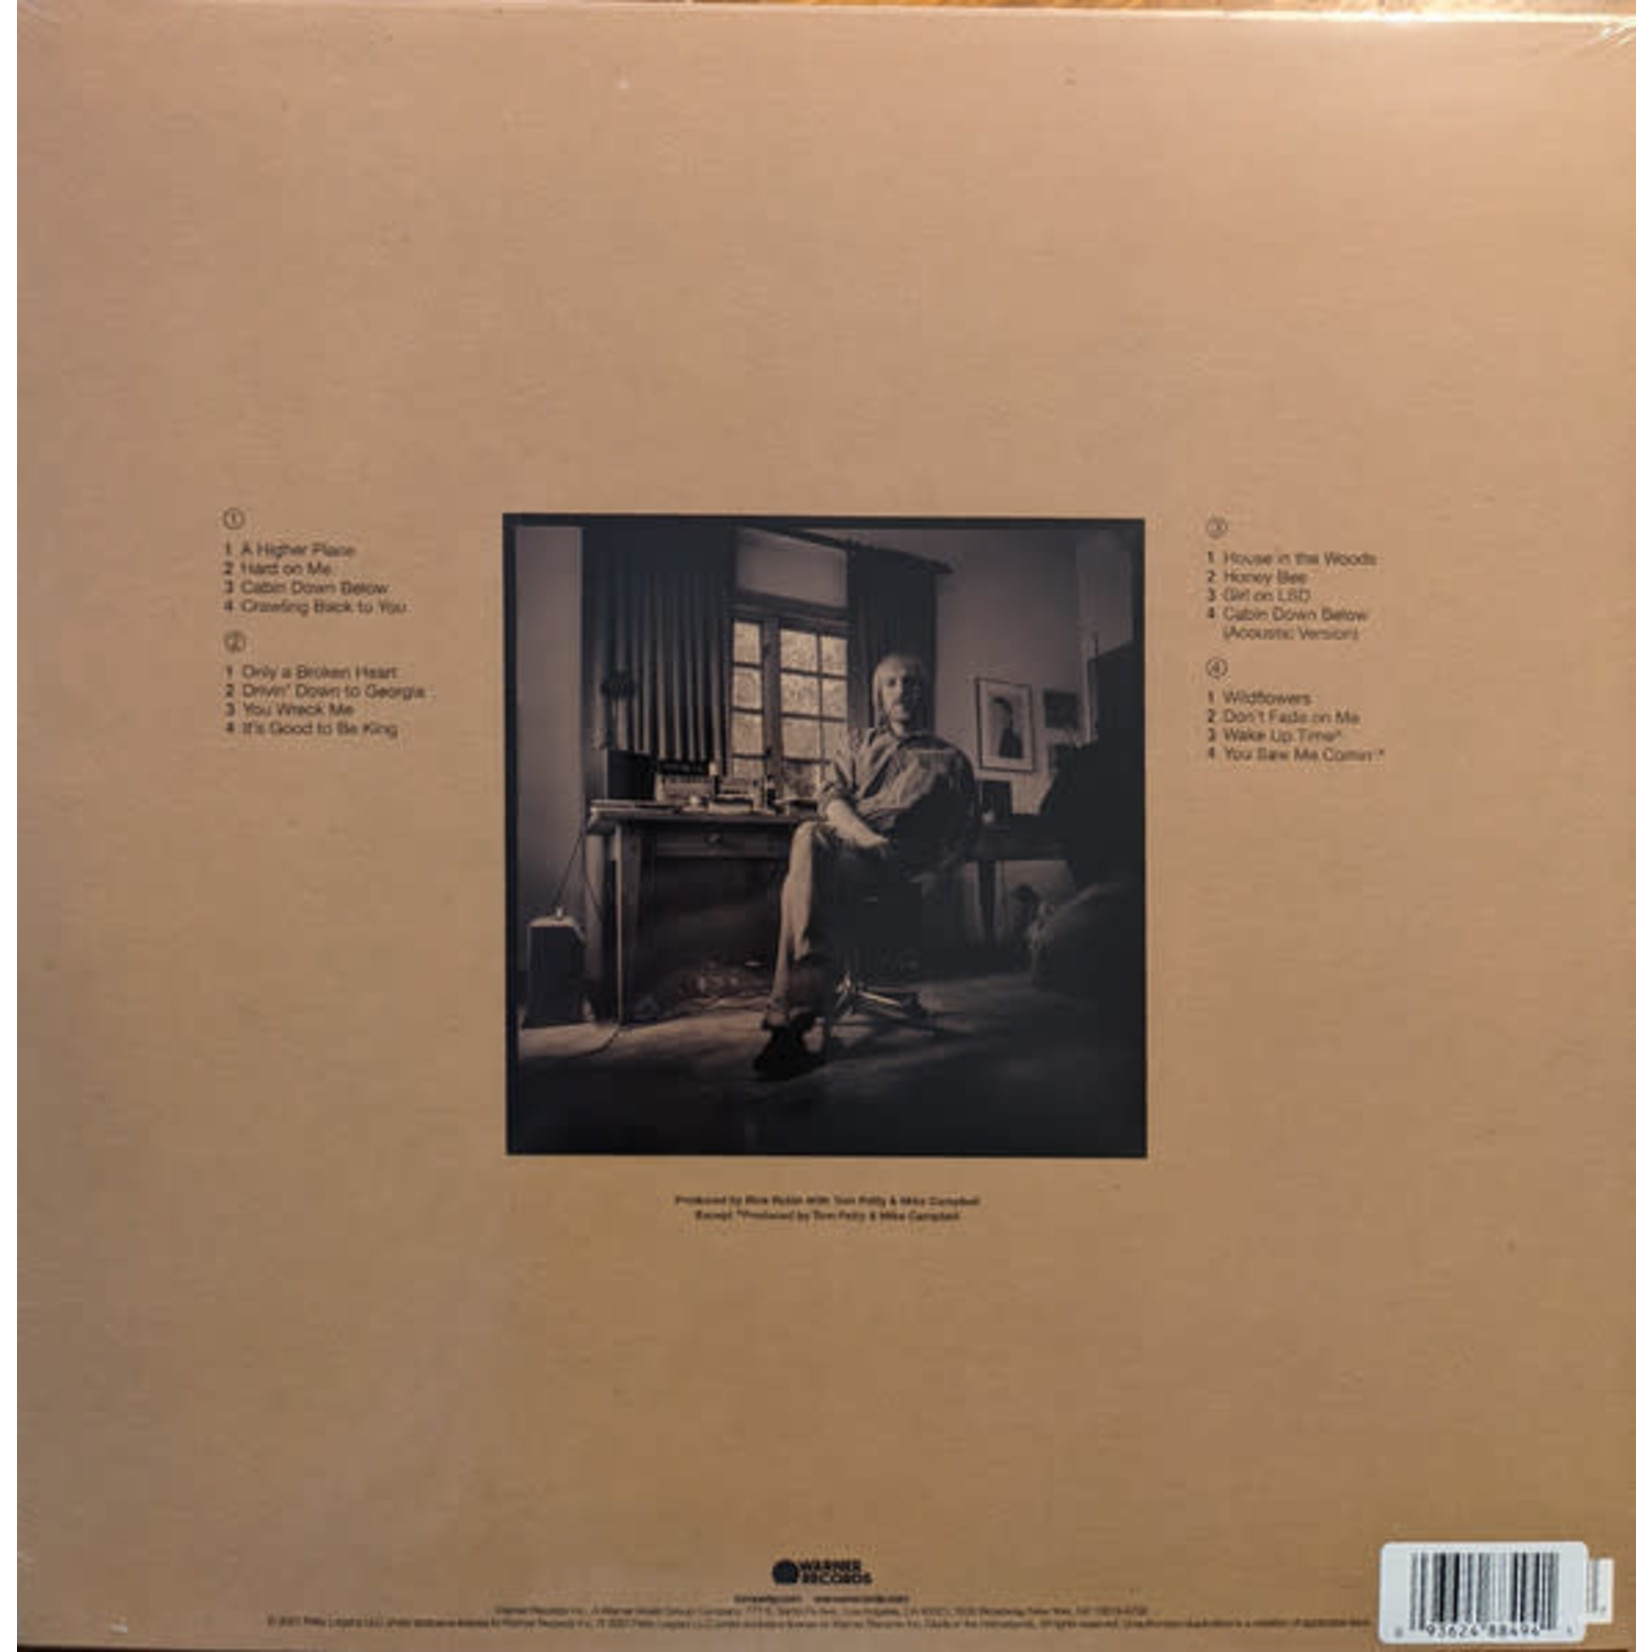 Warner Bros Tom Petty - Finding Wildflowers: Alternate Versions (2LP) [Gold]